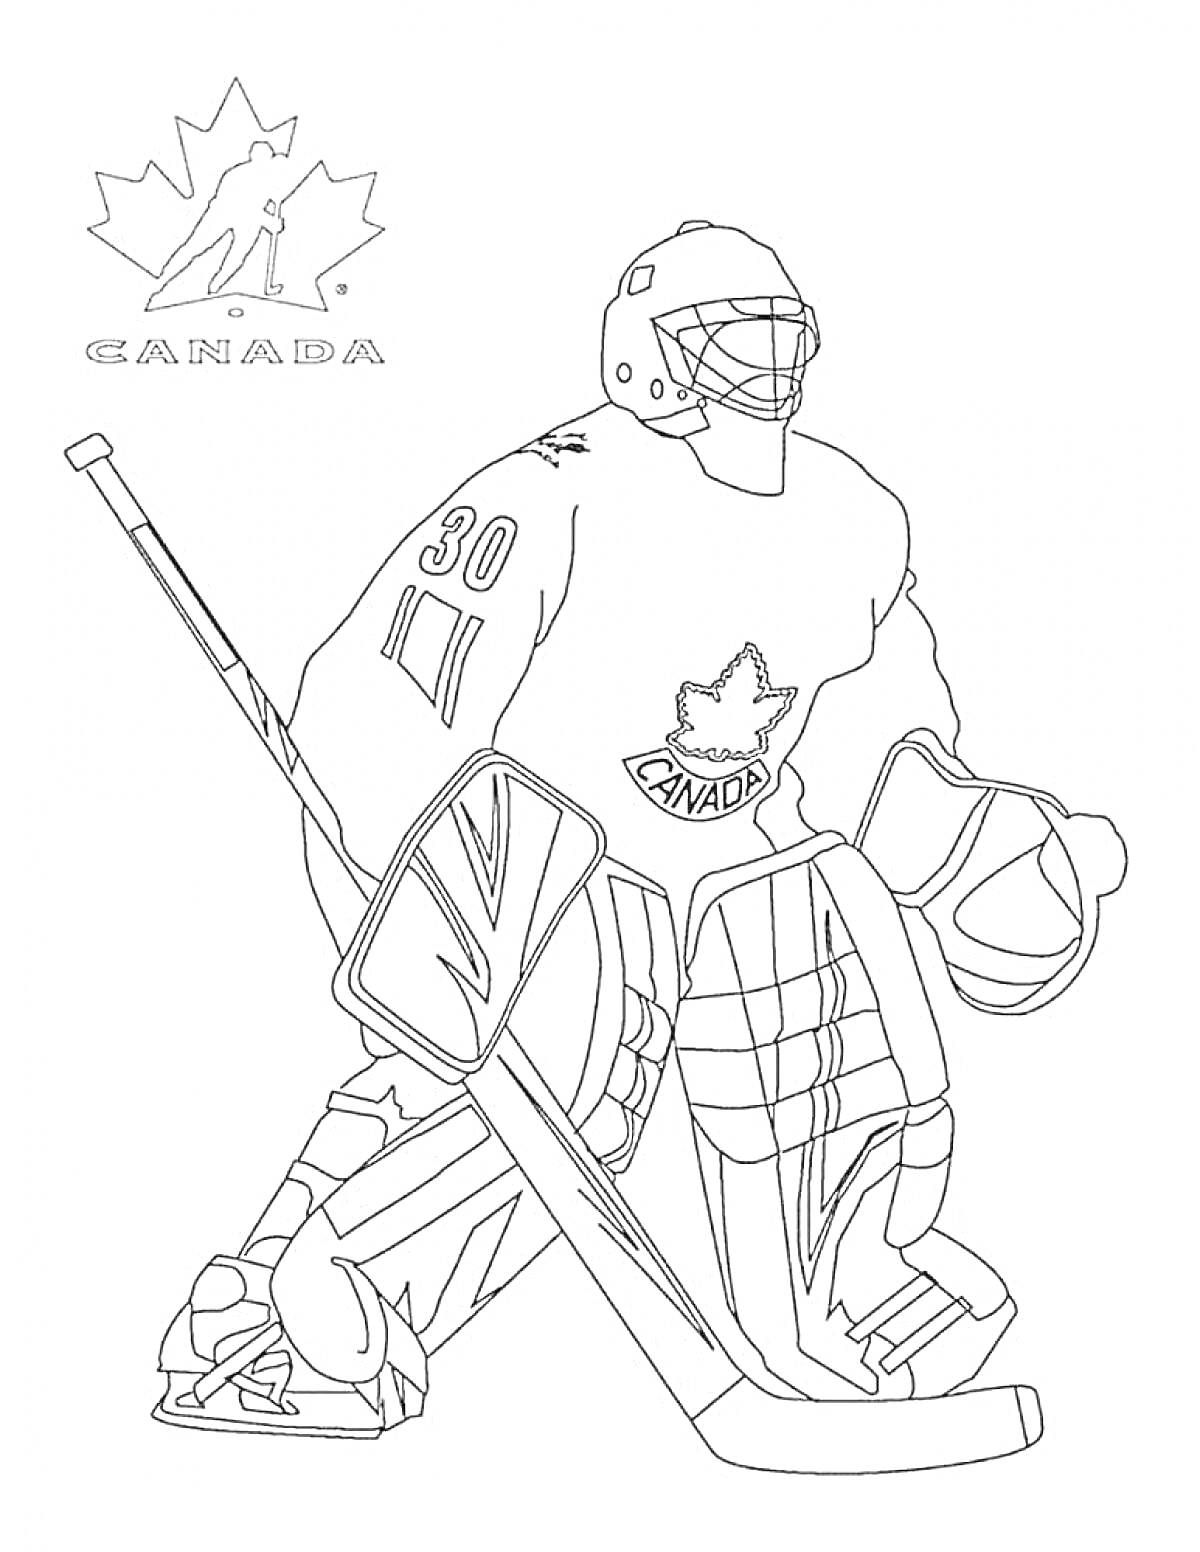 Канадский хоккейный вратарь в экипировке с клюшкой и логотипом Канады на форме